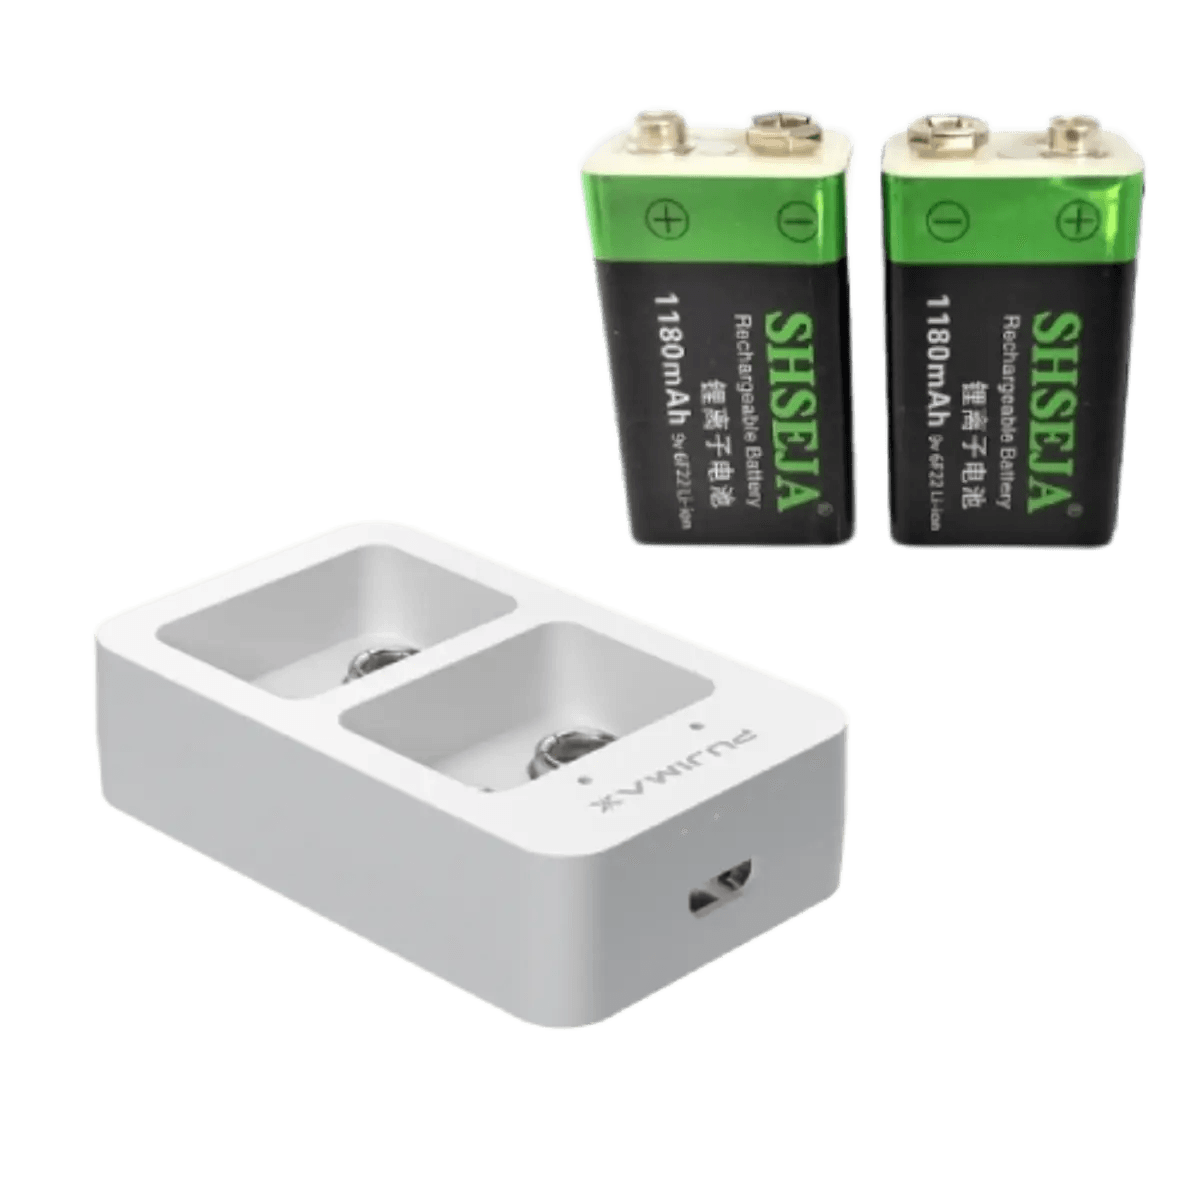 Chargeur rapide intelligent avec +2 batteries rechargeables 9v Li-ion